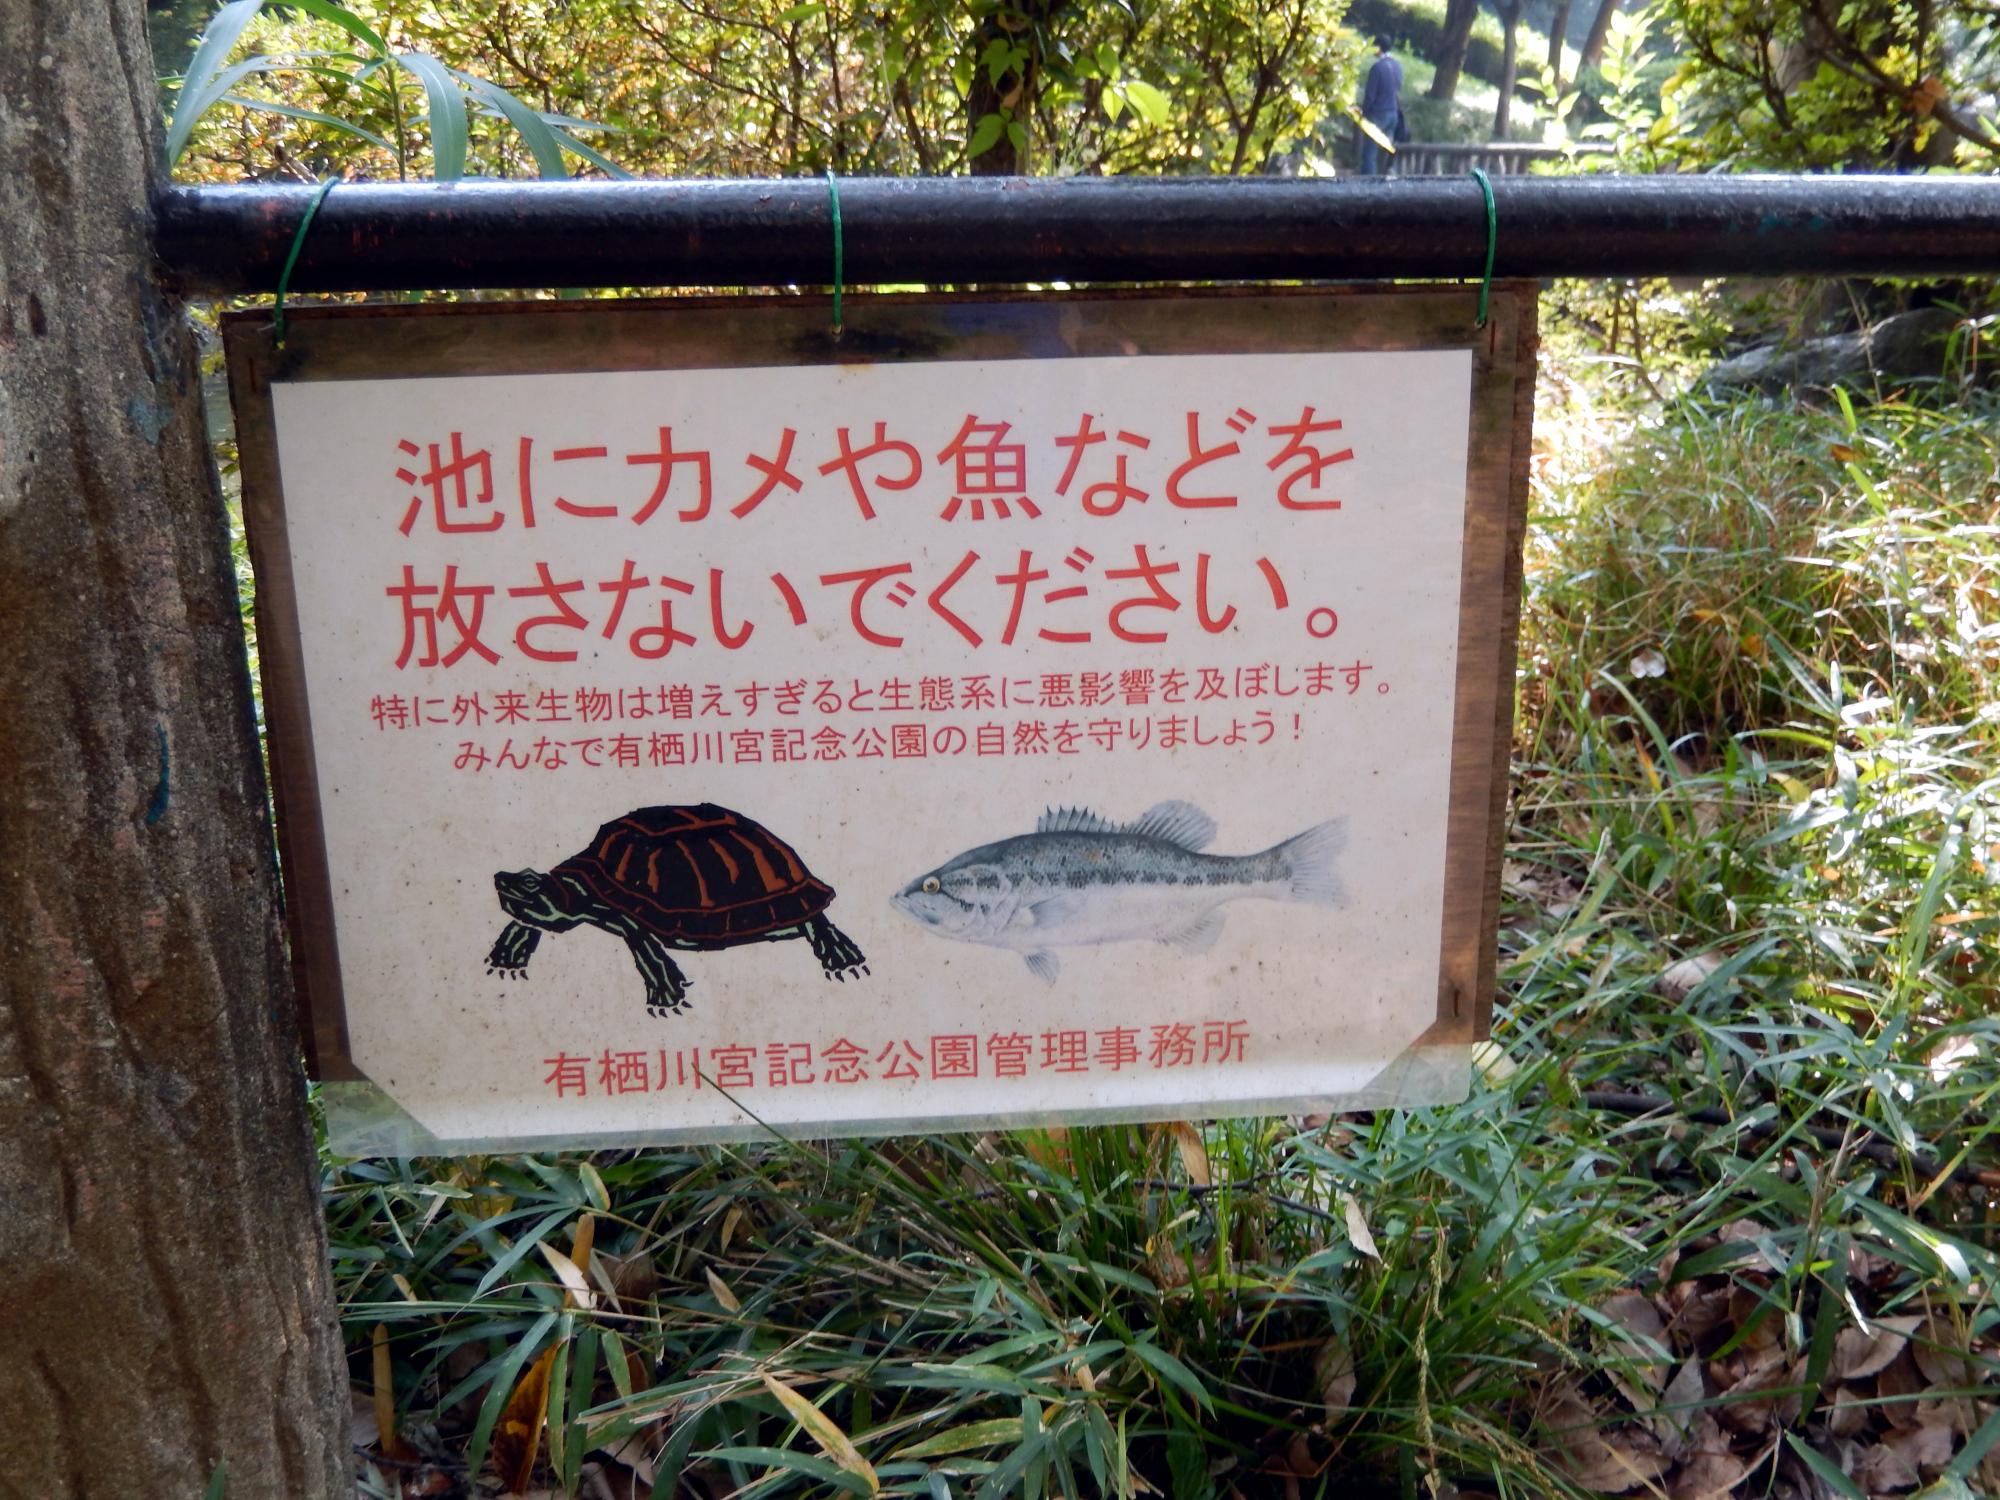 Signs Of Japan - Arisugawa Park Signs #6